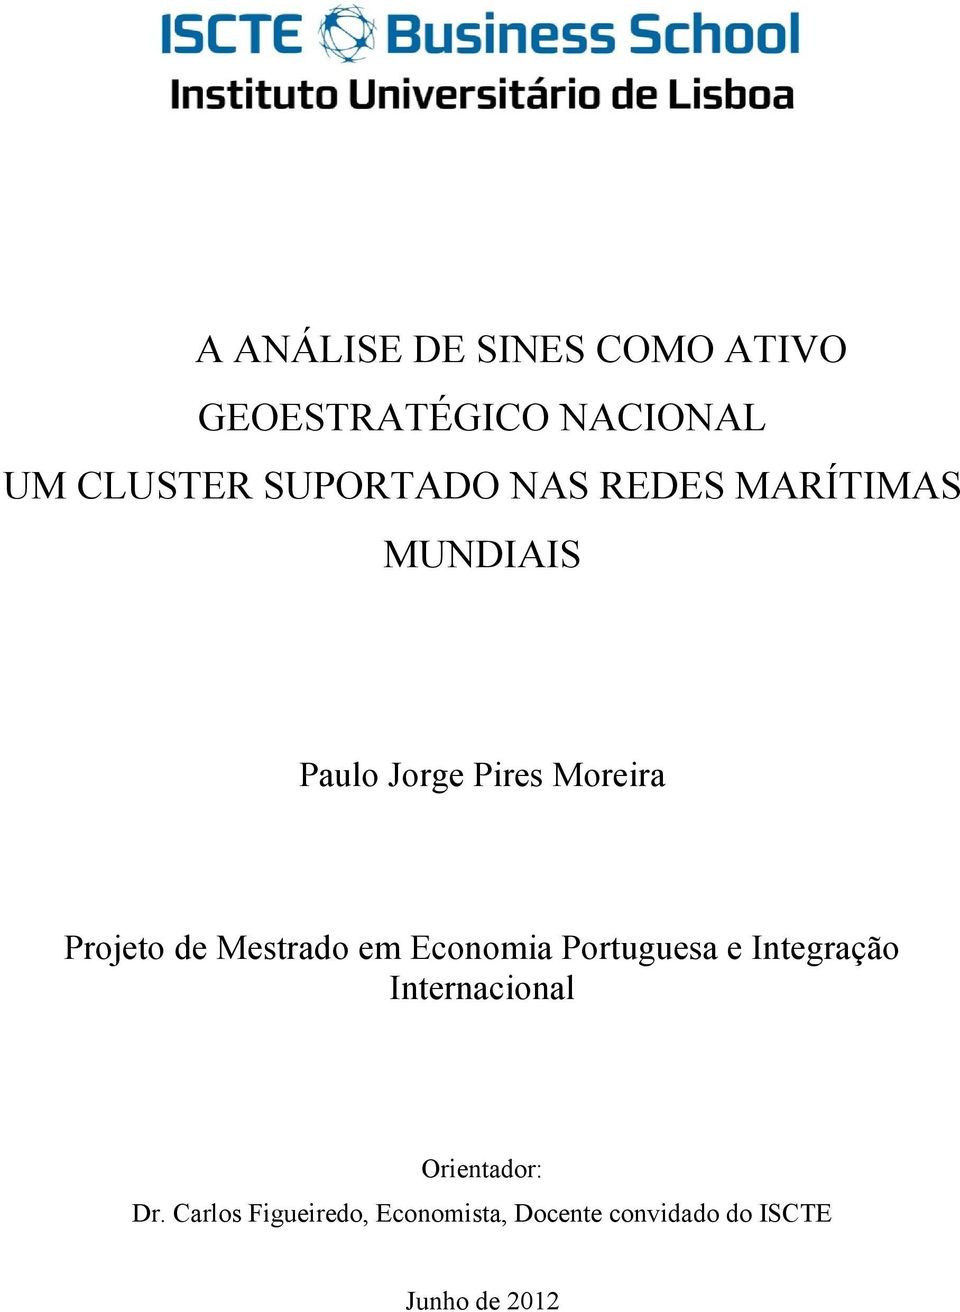 Projeto de Mestrado em Economia Portuguesa e Integração Internacional